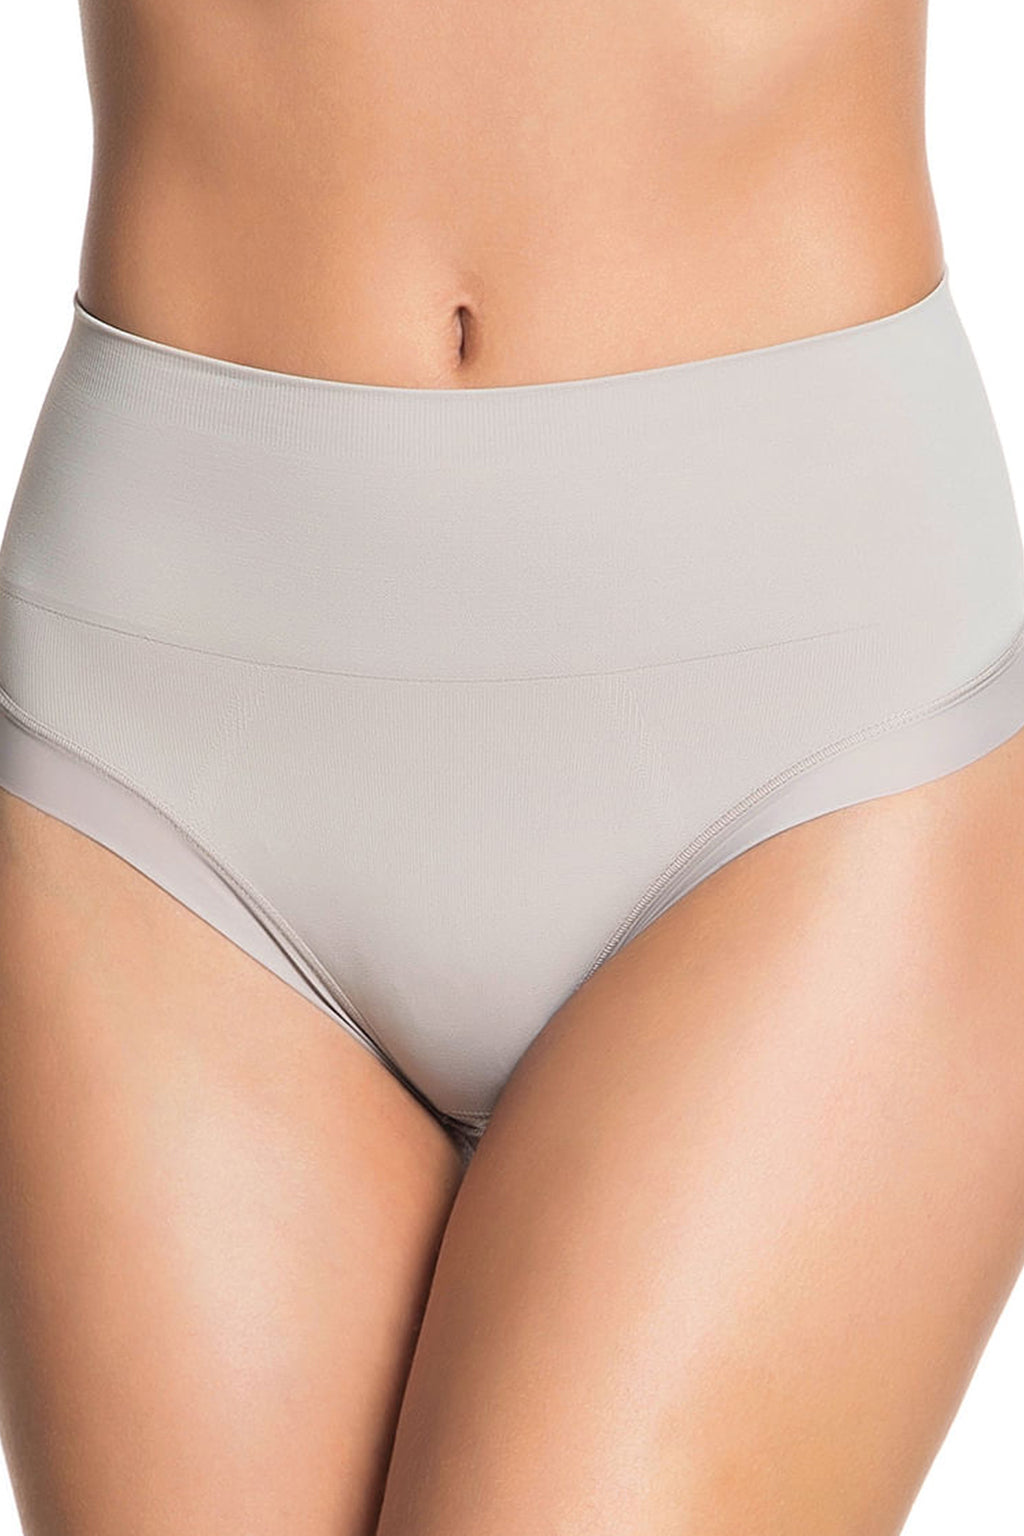 Women's Tummy Control Panities Shapewear Knickers Underwear Waist